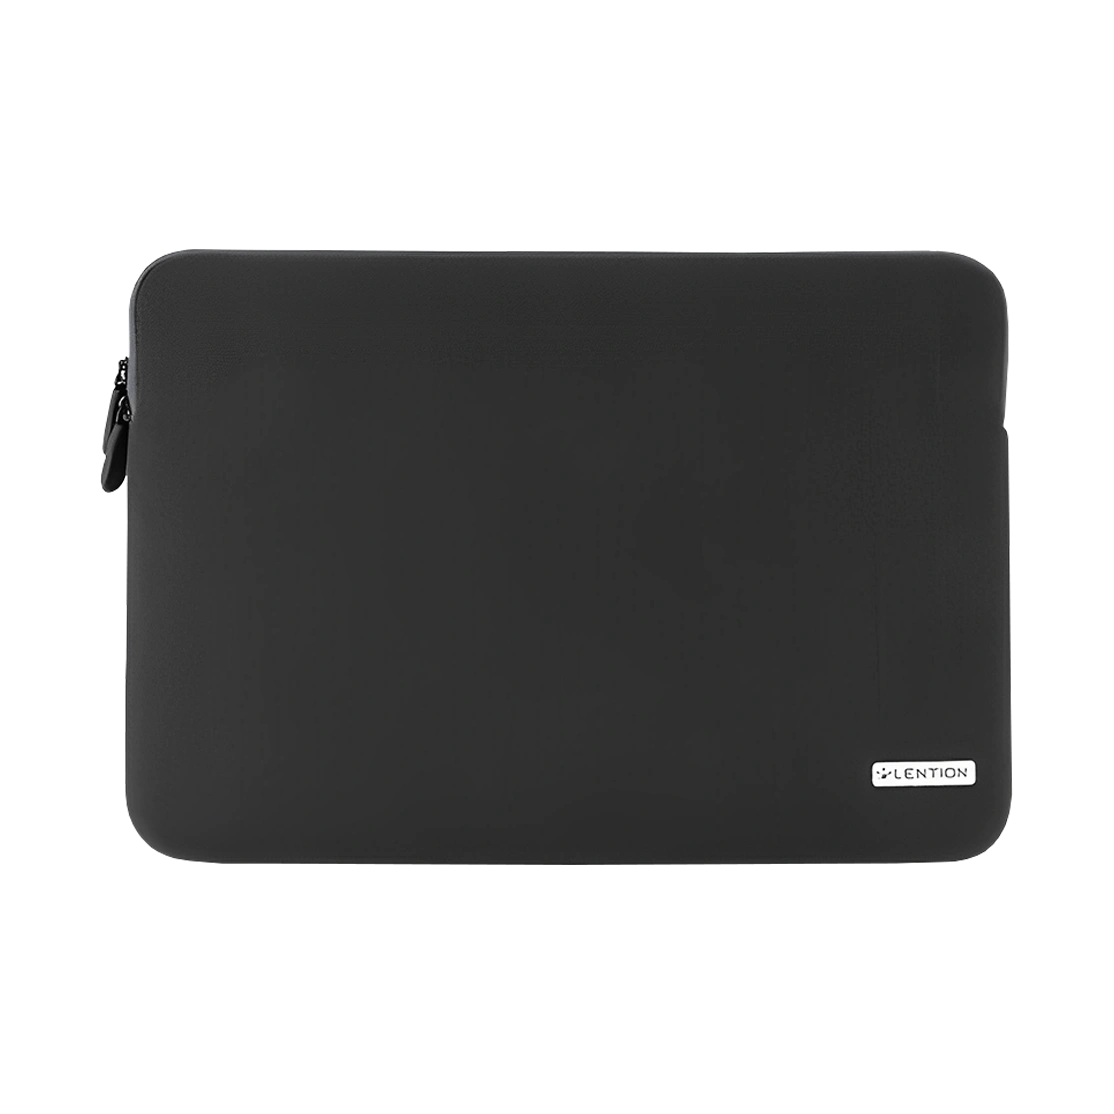 Lention Neoprene Sleeve Zipper Case for Macbook 13-inch PCB-B390